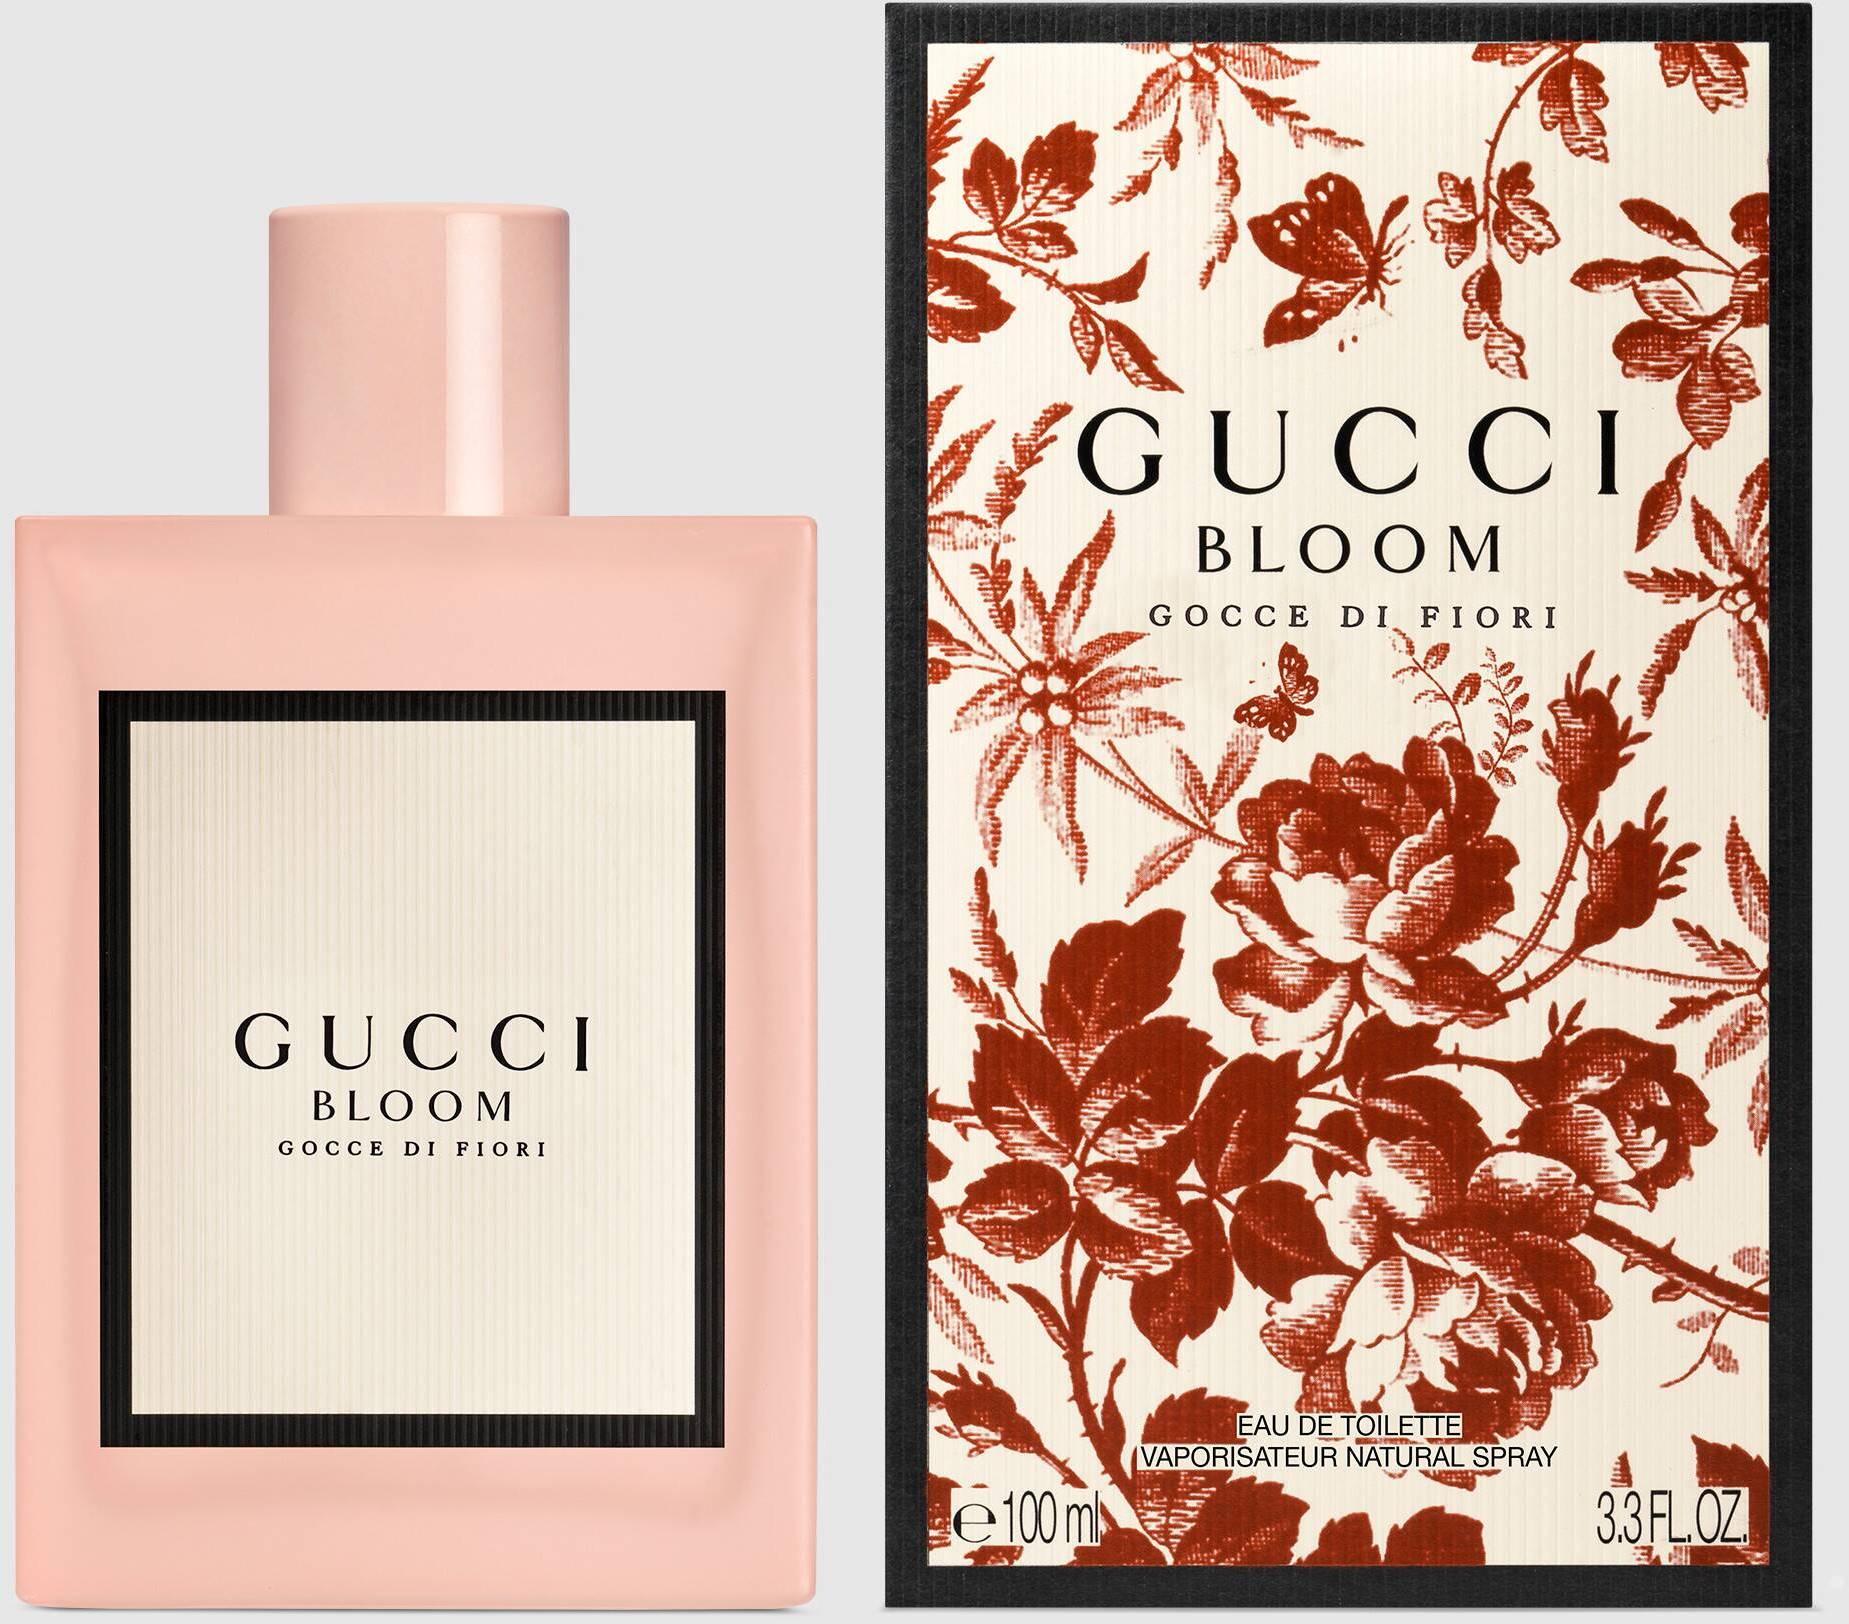 Gucci Bloom Gocce di Fiori Eau de 